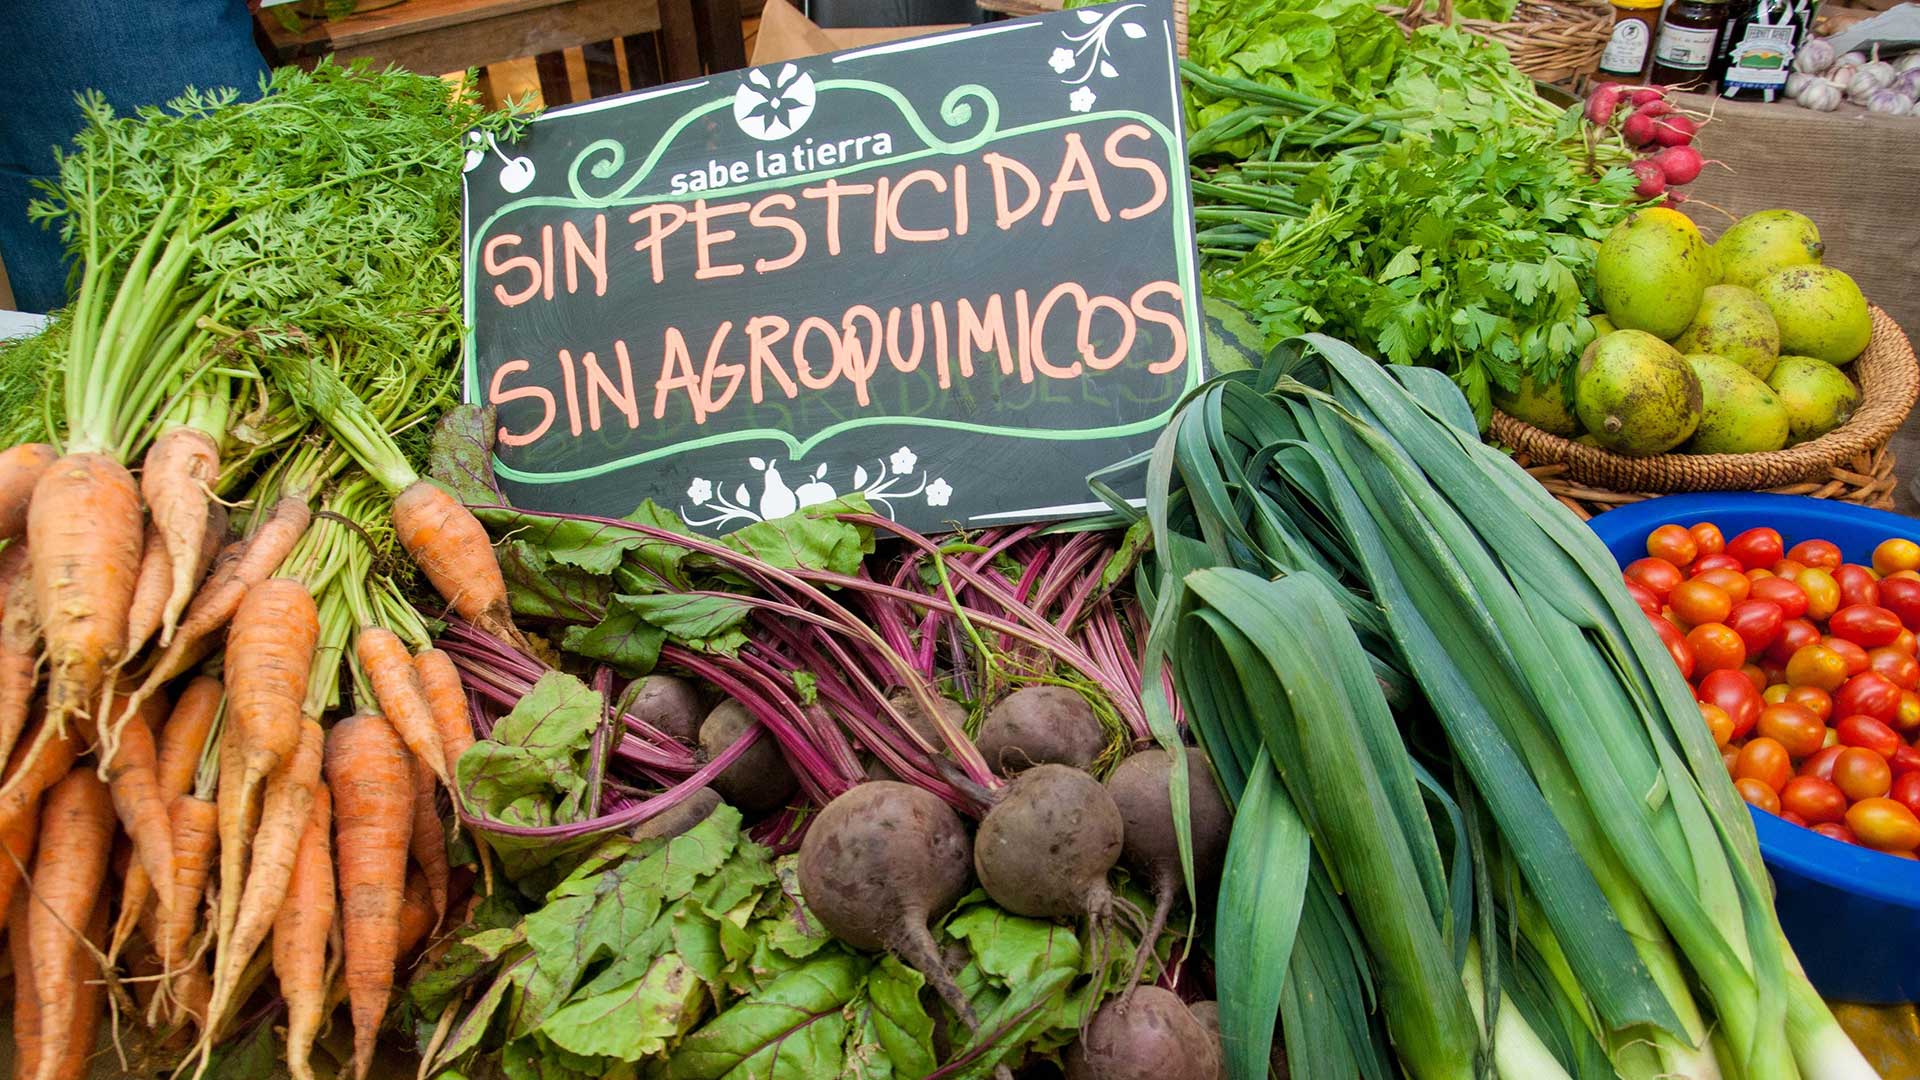 <p>Una cartel en un mercado de Buenos Aires indica que los vegetales fueron producidos sin agroquímicos (imagen Fermín Koop)</p>